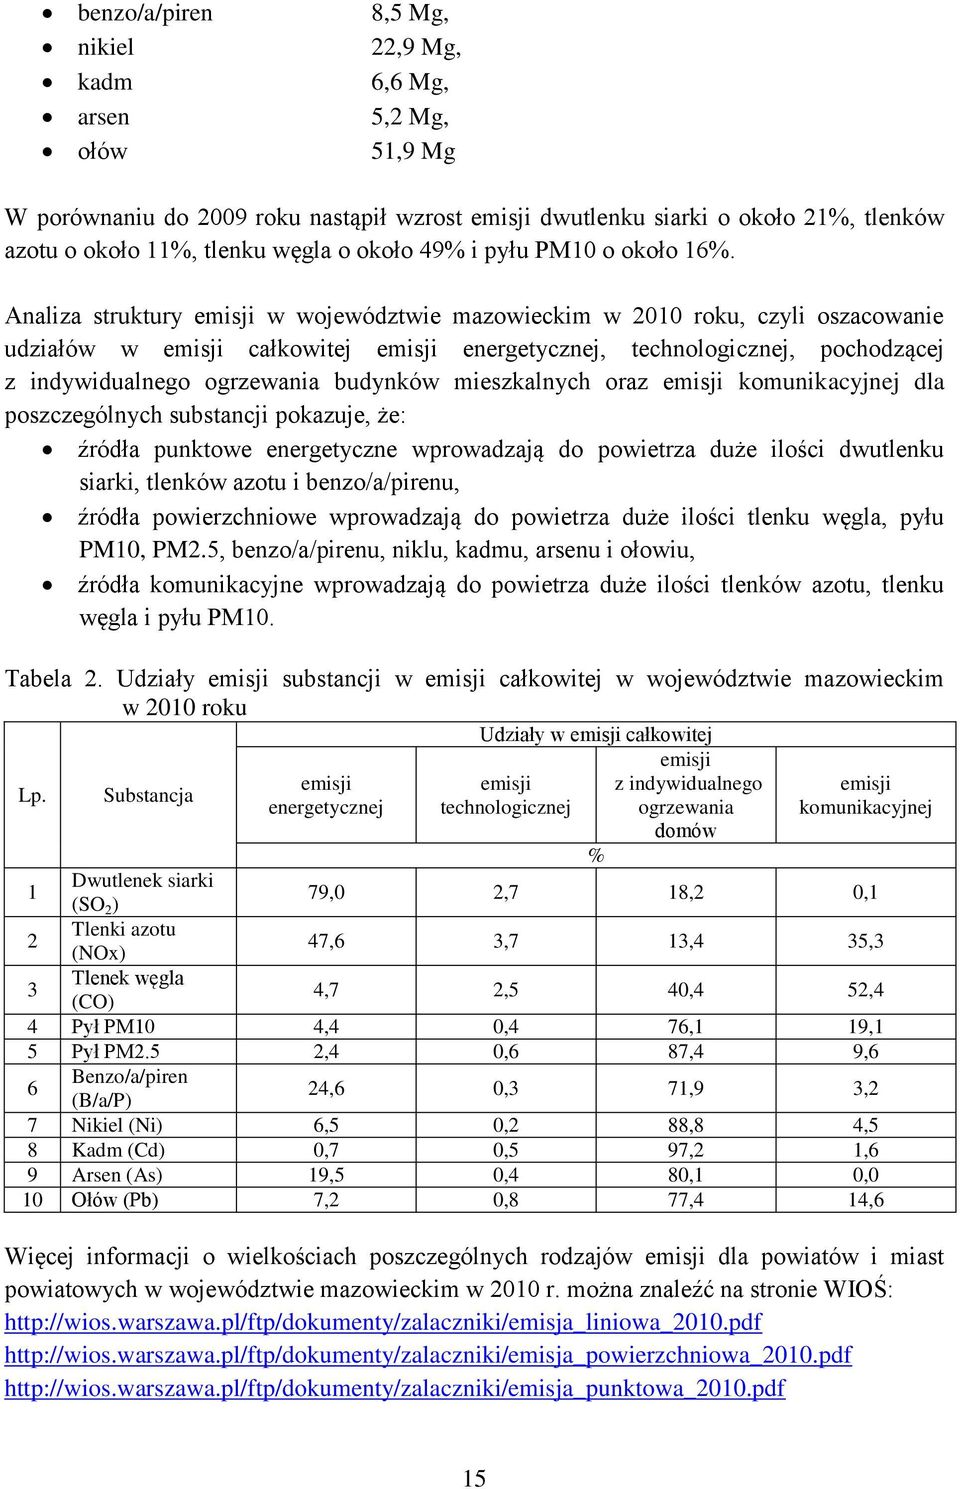 Analiza struktury emisji w województwie mazowieckim w 2010 roku, czyli oszacowanie udziałów w emisji całkowitej emisji energetycznej, technologicznej, pochodzącej z indywidualnego ogrzewania budynków